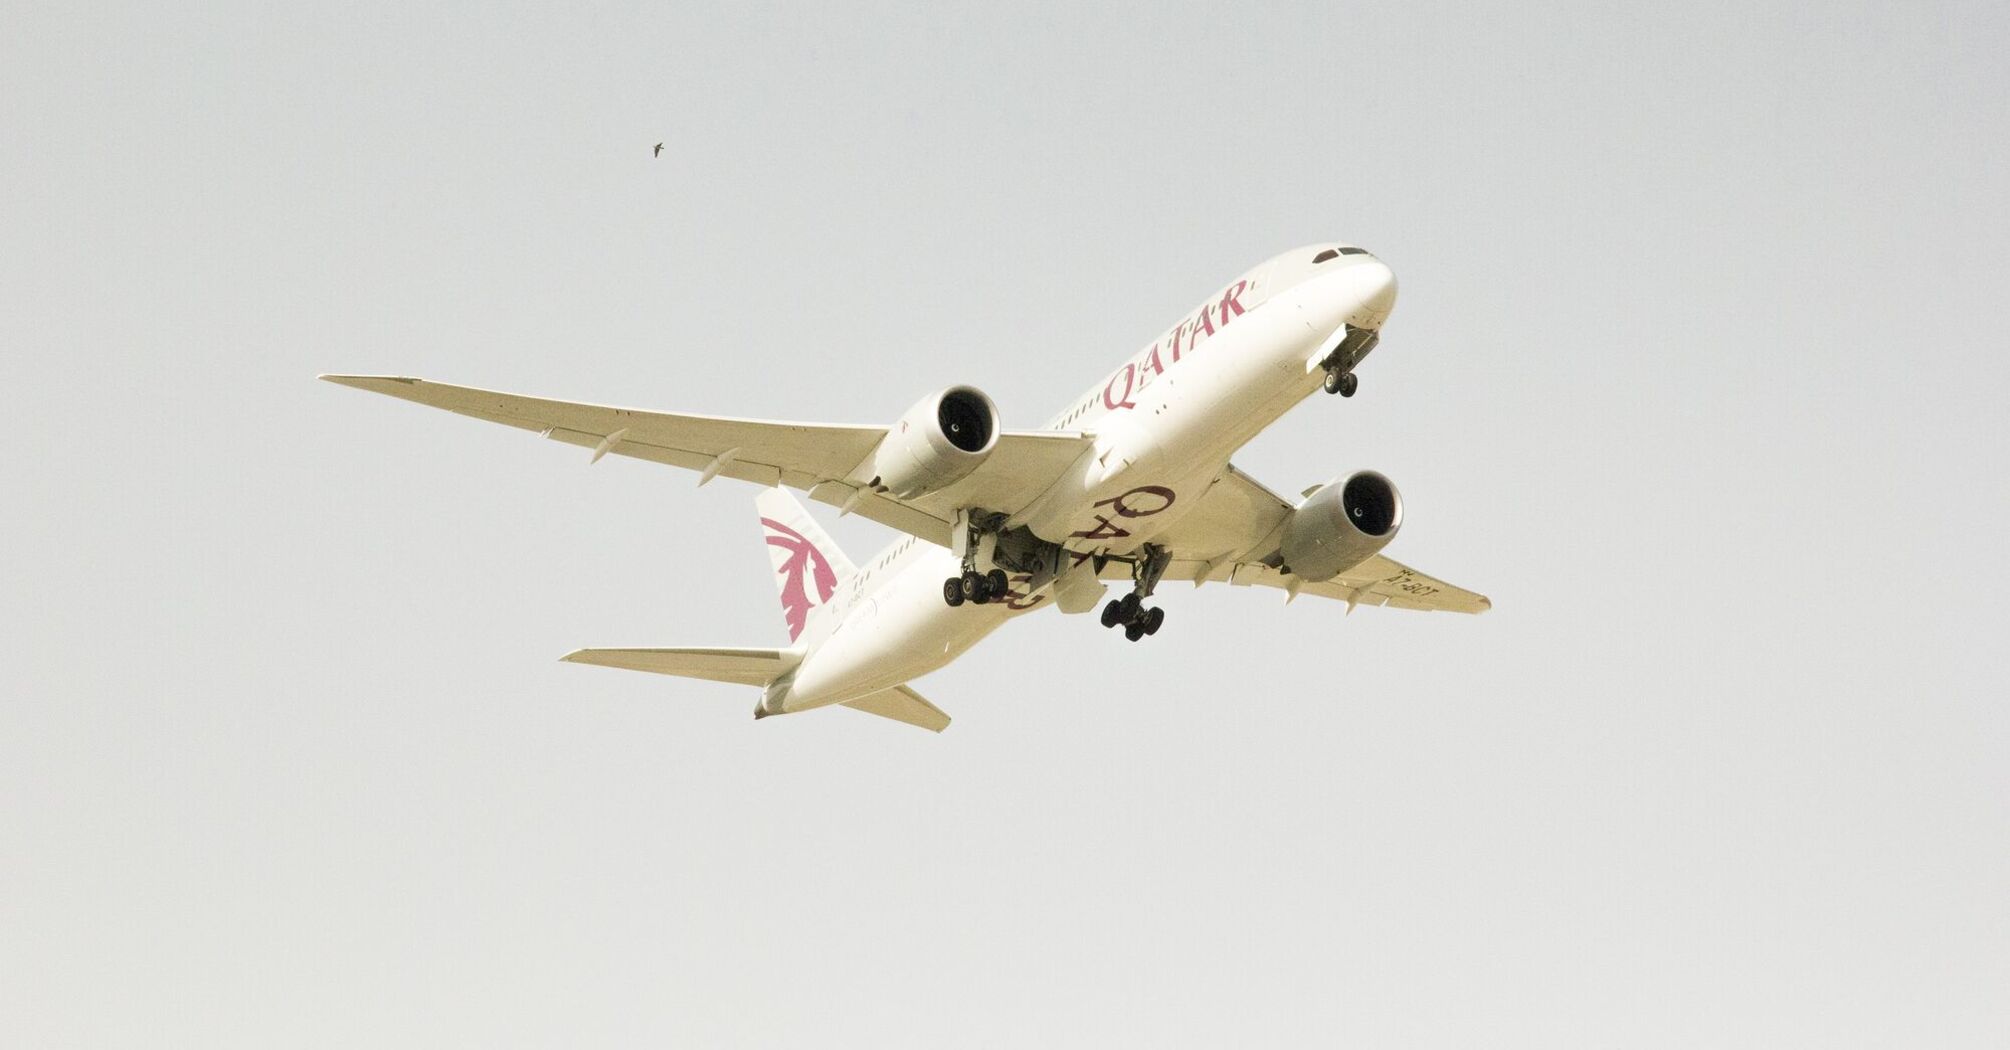 Qatar Airways plane in flight